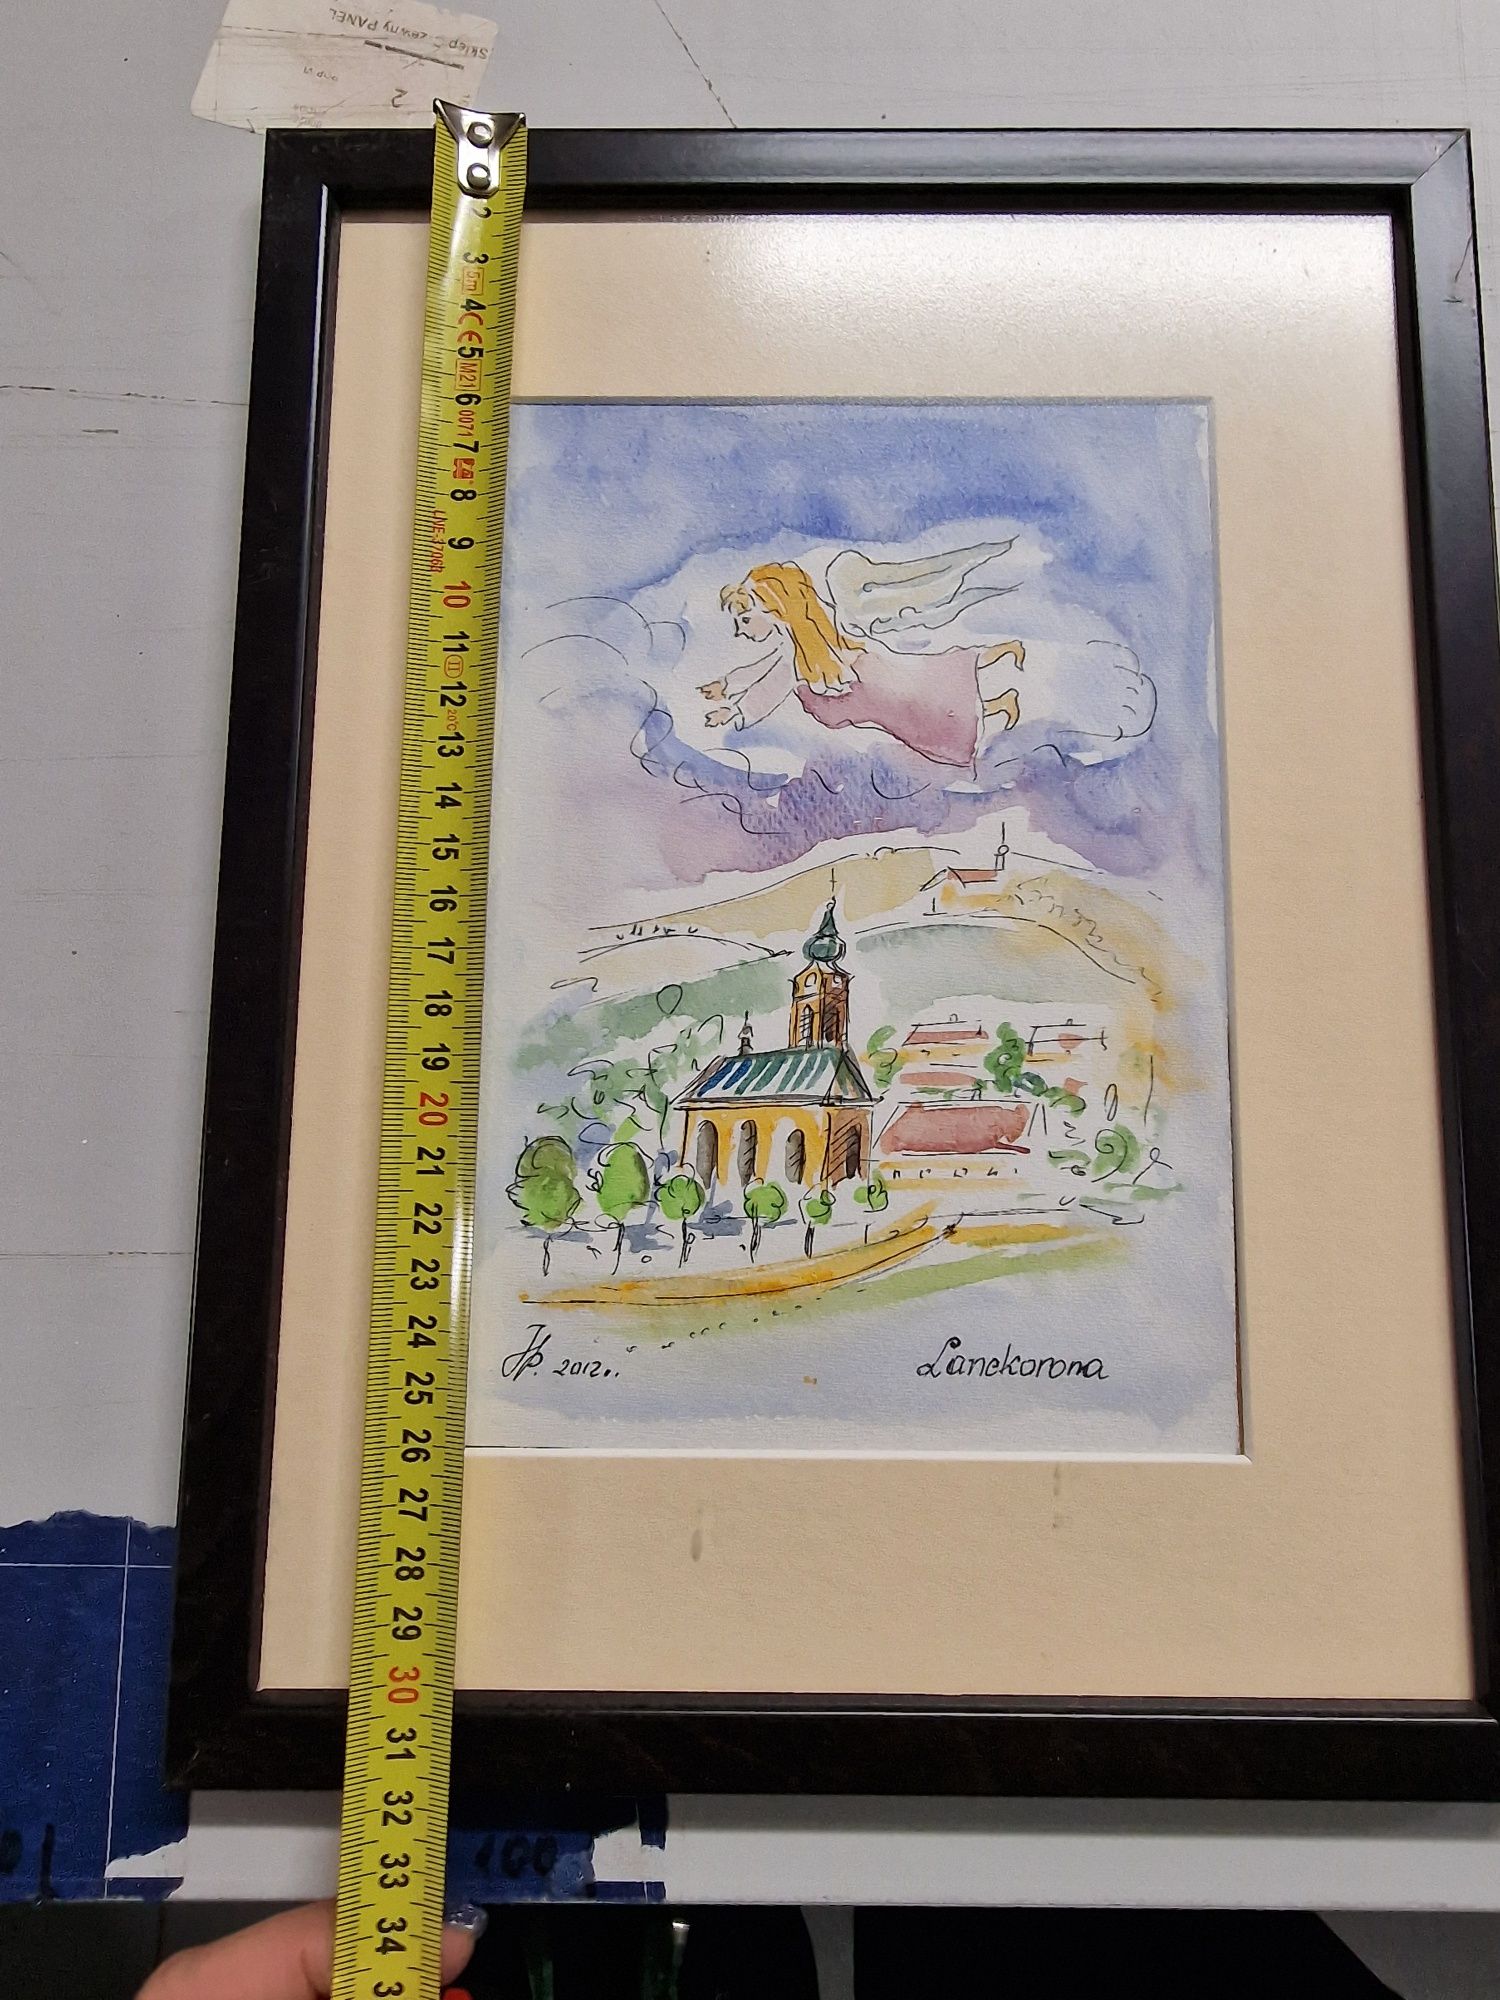 Obraz Lanckorona w ramie na zamówienie 31,5 x 24,5 cm